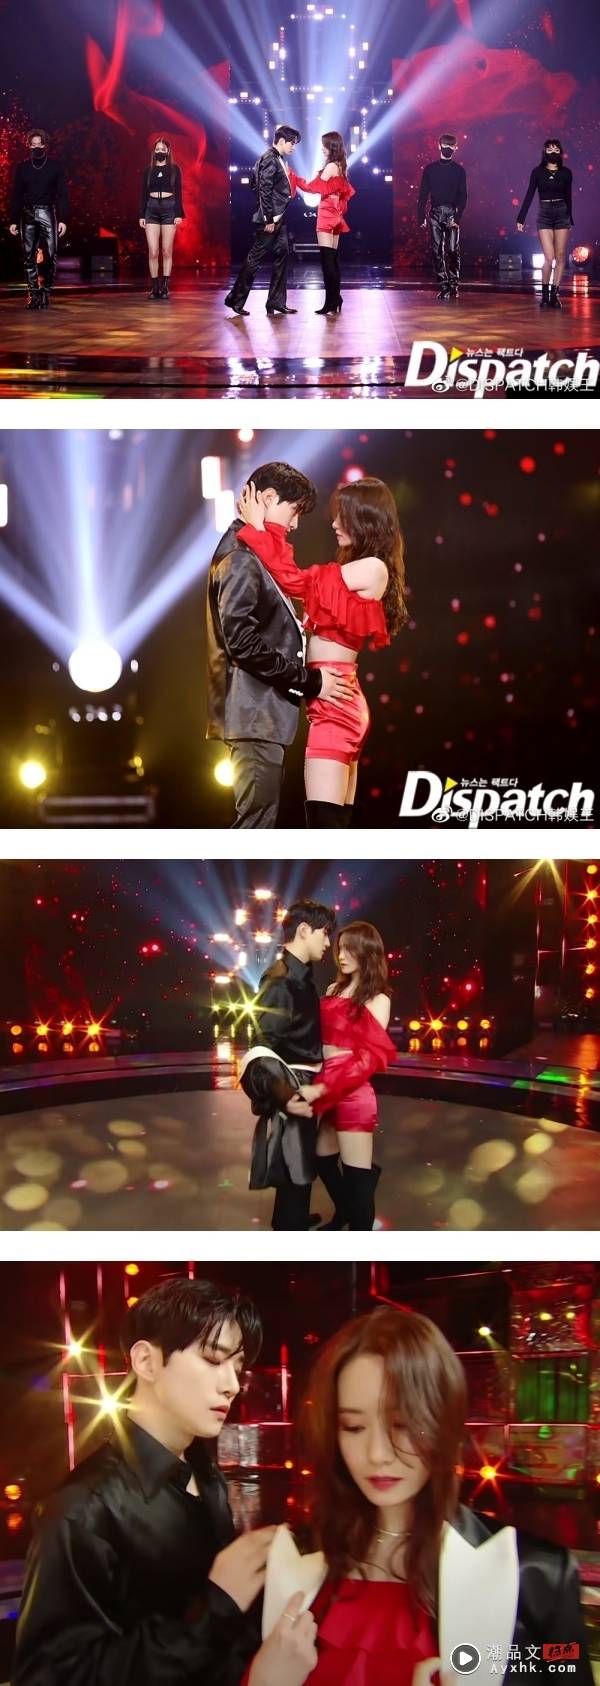 少女时代允儿、2PM 俊昊献性感双人舞 两人互相抚摸…快亲上了！ 娱乐资讯 图2张